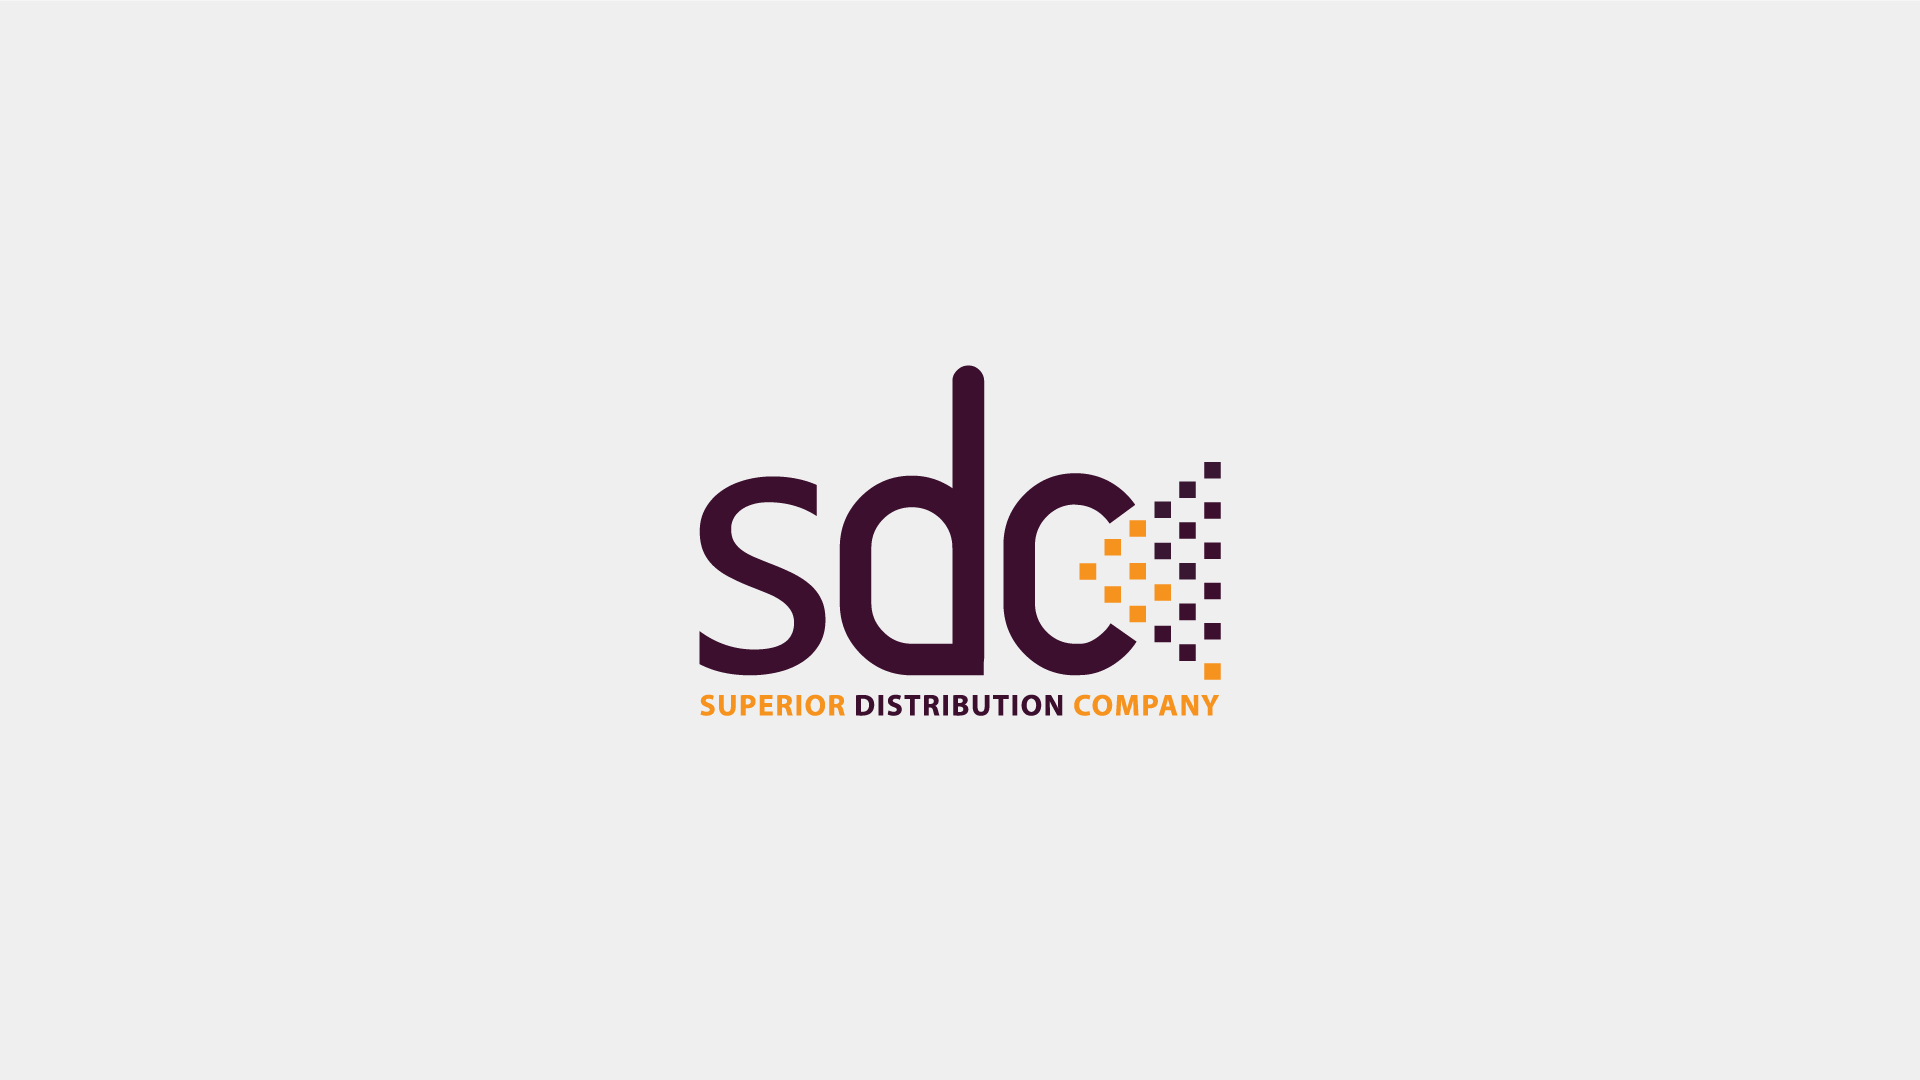 sdc-superior-distribution-company-codist